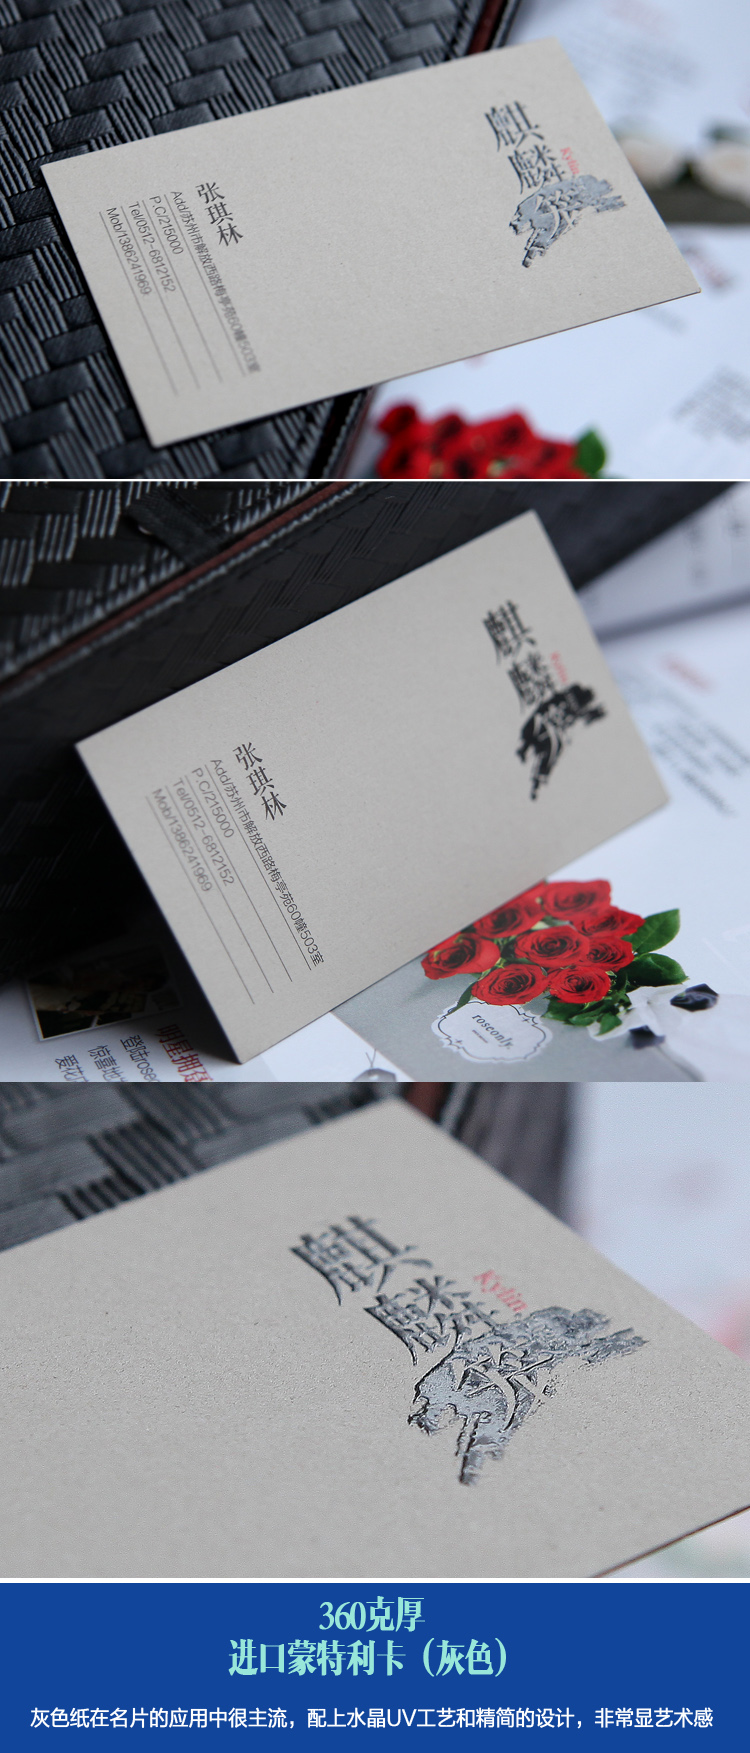 麒麟贸易上海有限公司名片设计欣赏